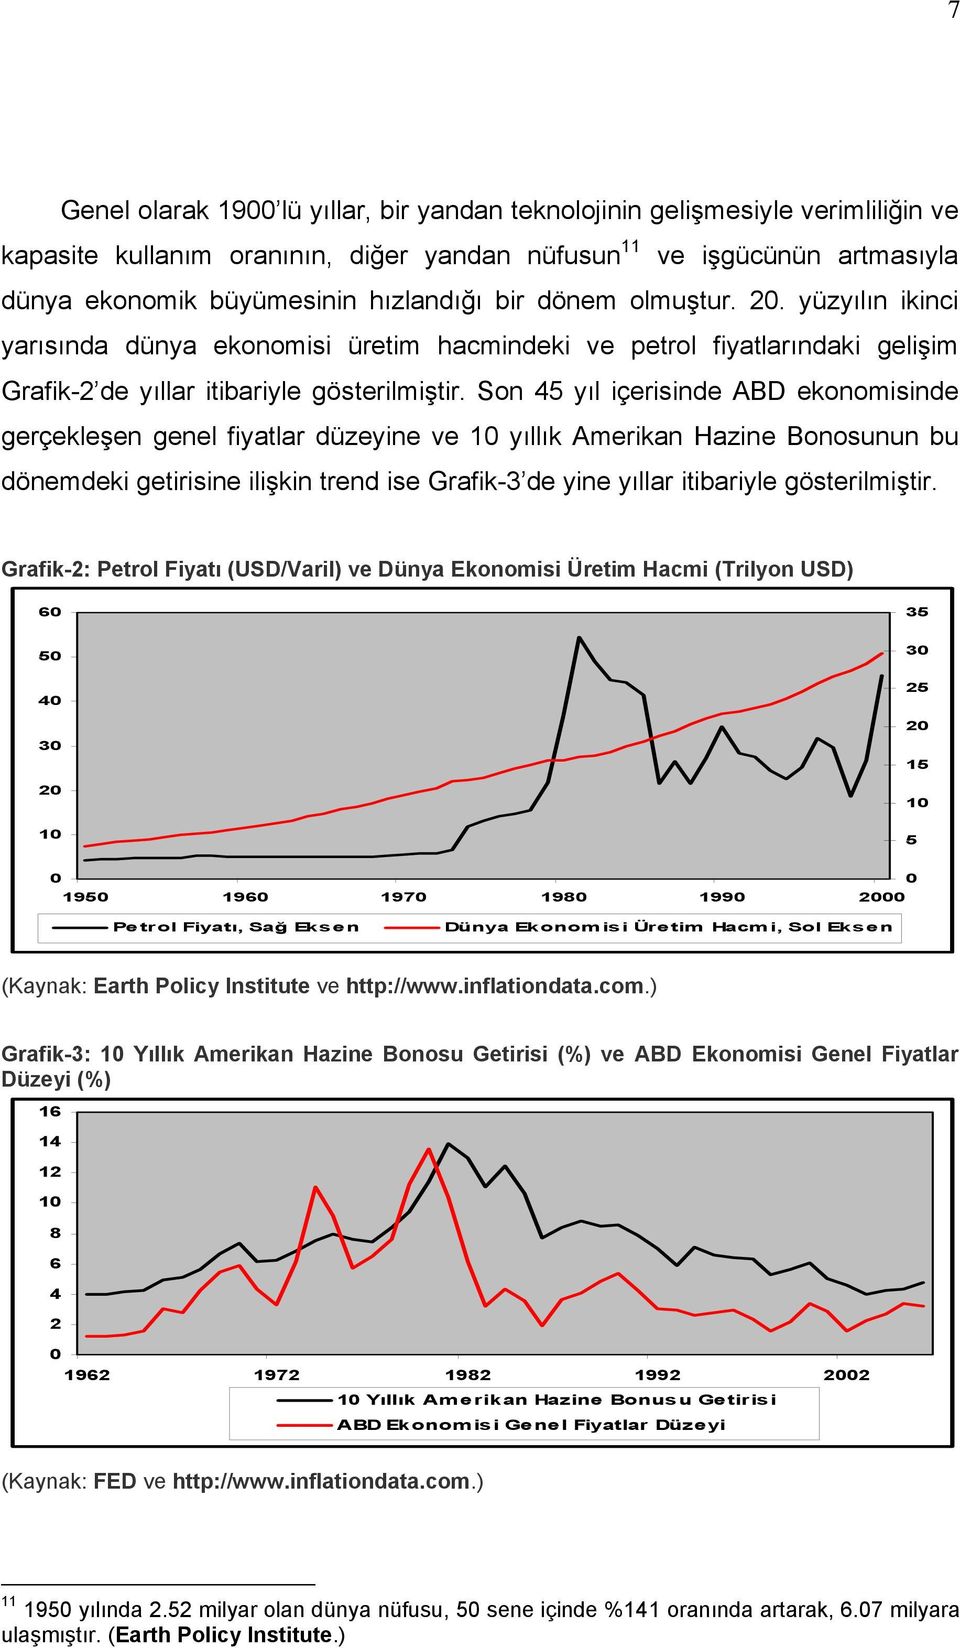 Son 45 yıl içerisinde ABD ekonomisinde gerçekleşen genel fiyatlar düzeyine ve 10 yıllık Amerikan Hazine Bonosunun bu dönemdeki getirisine ilişkin trend ise Grafik-3 de yine yıllar itibariyle